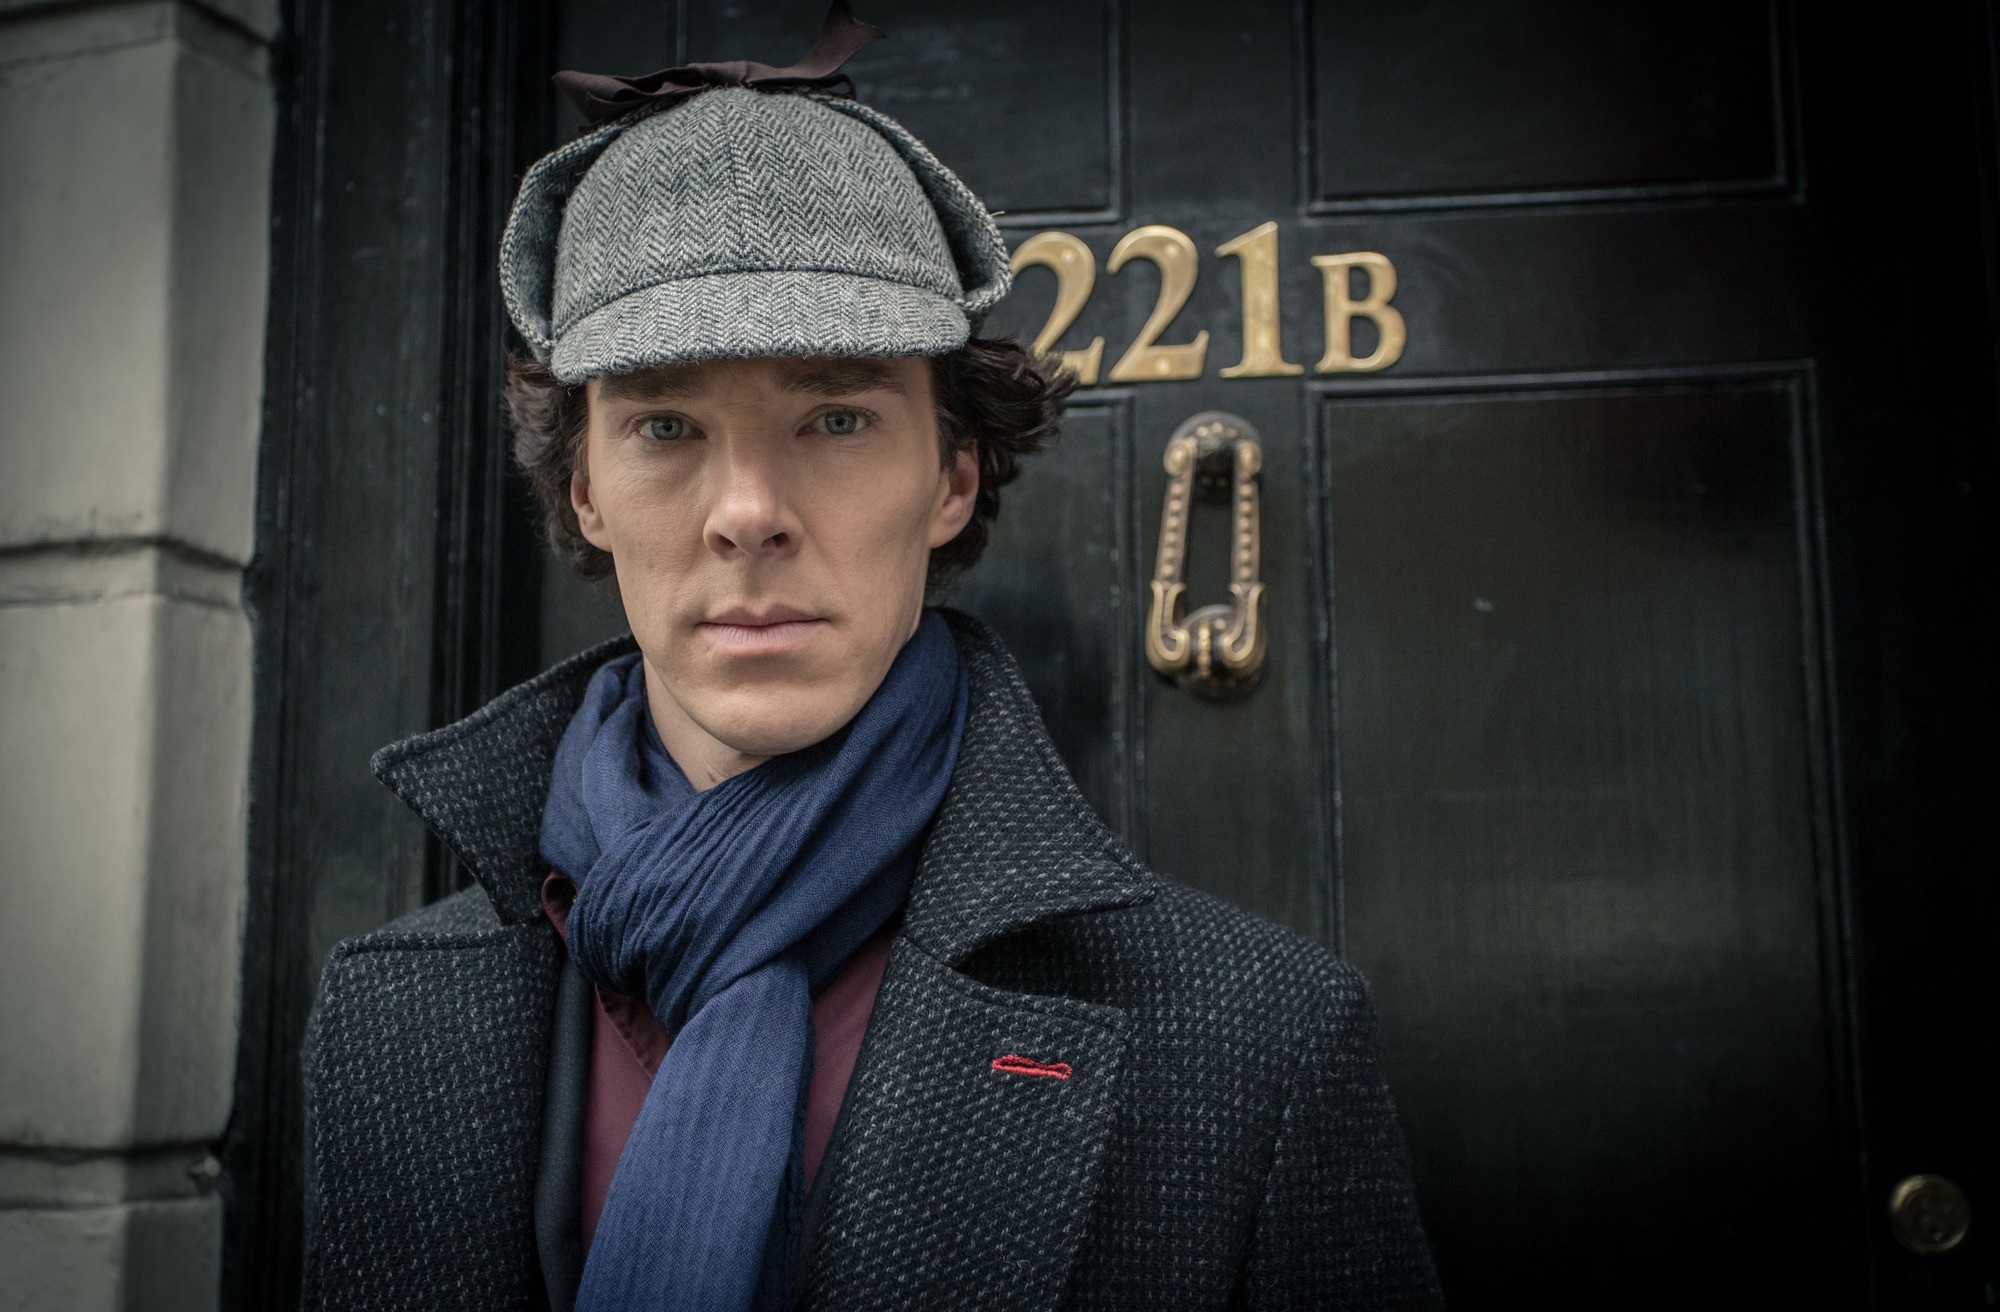 Descarga gratis la imagen Sherlock, Series De Televisión, Sherlock Holmes en el escritorio de tu PC